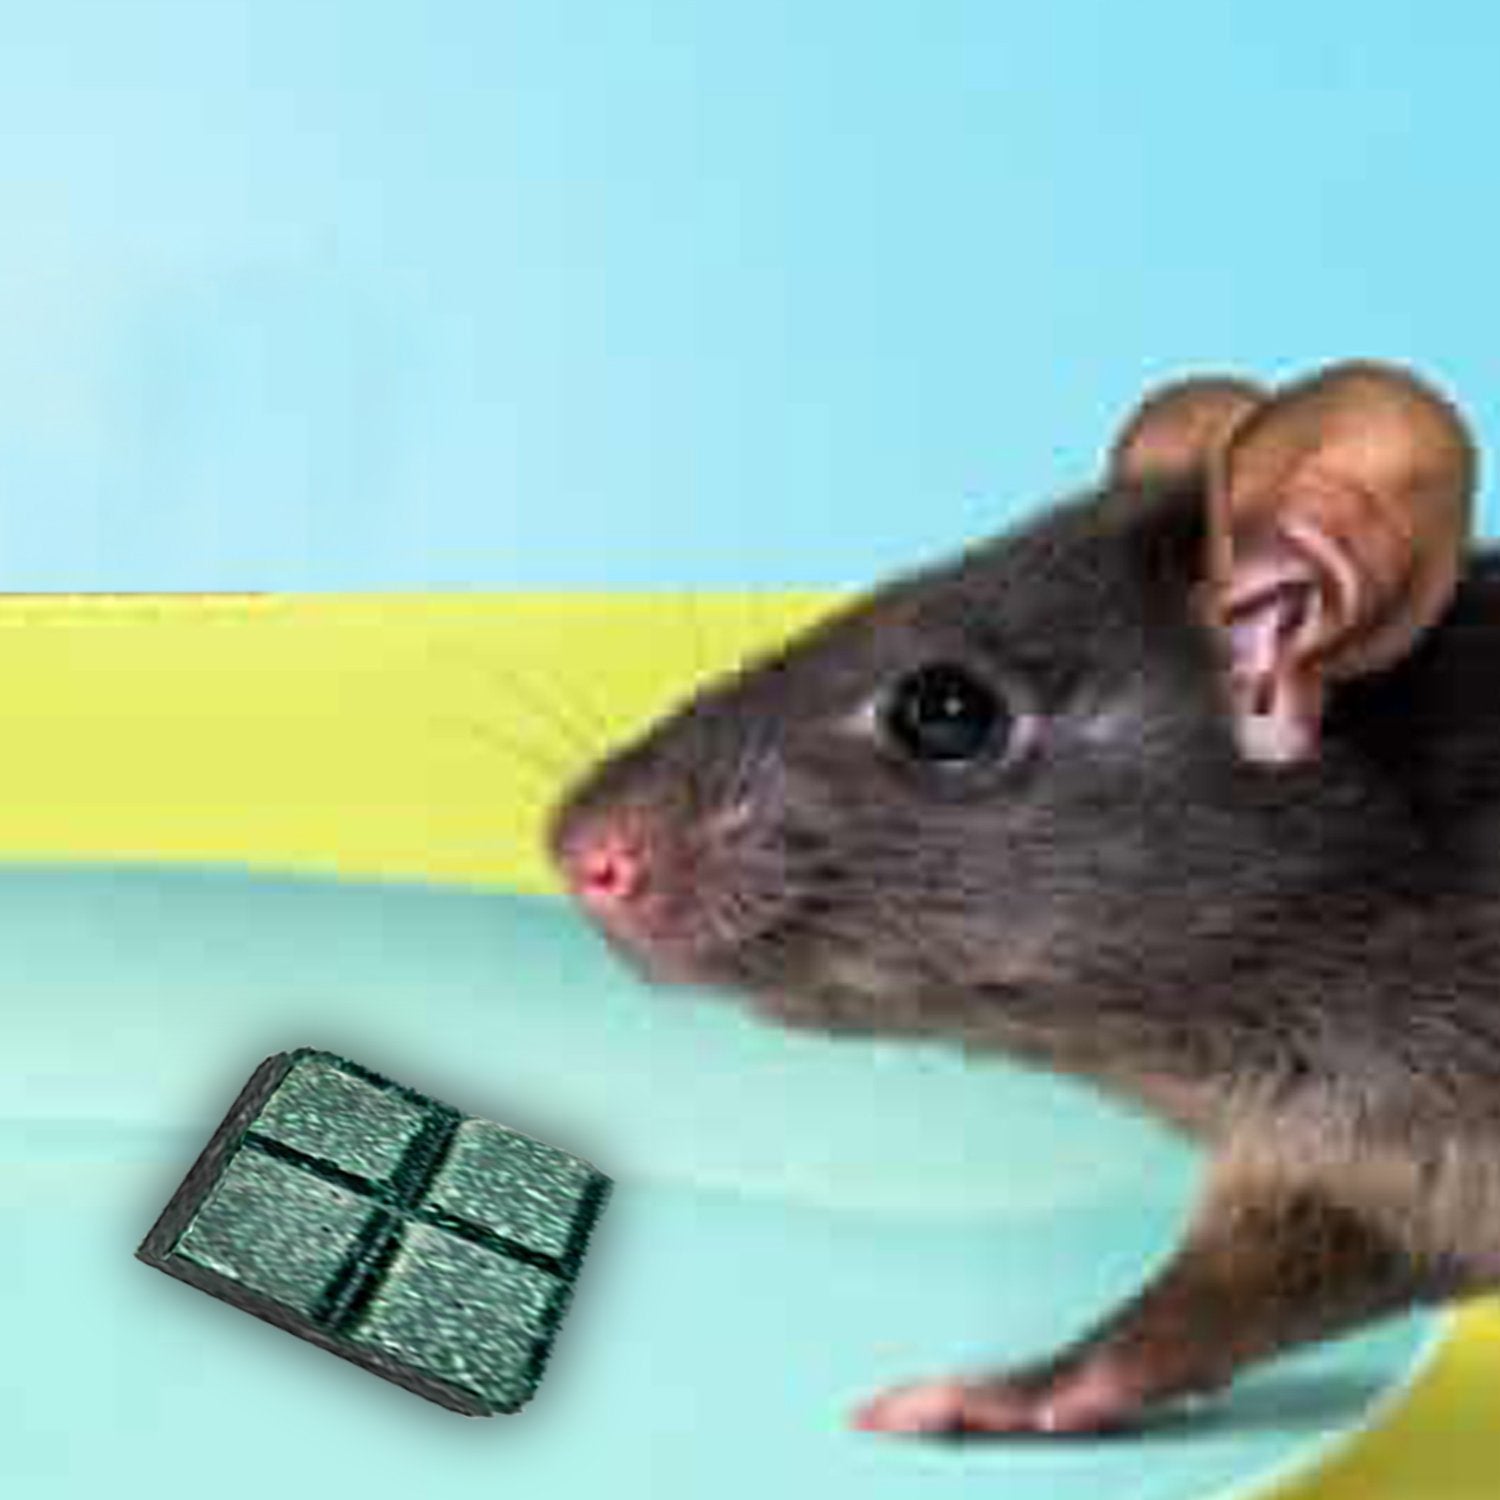 297 100gm PCI Roban the Rat Killer (Brown) BIG DeoDap